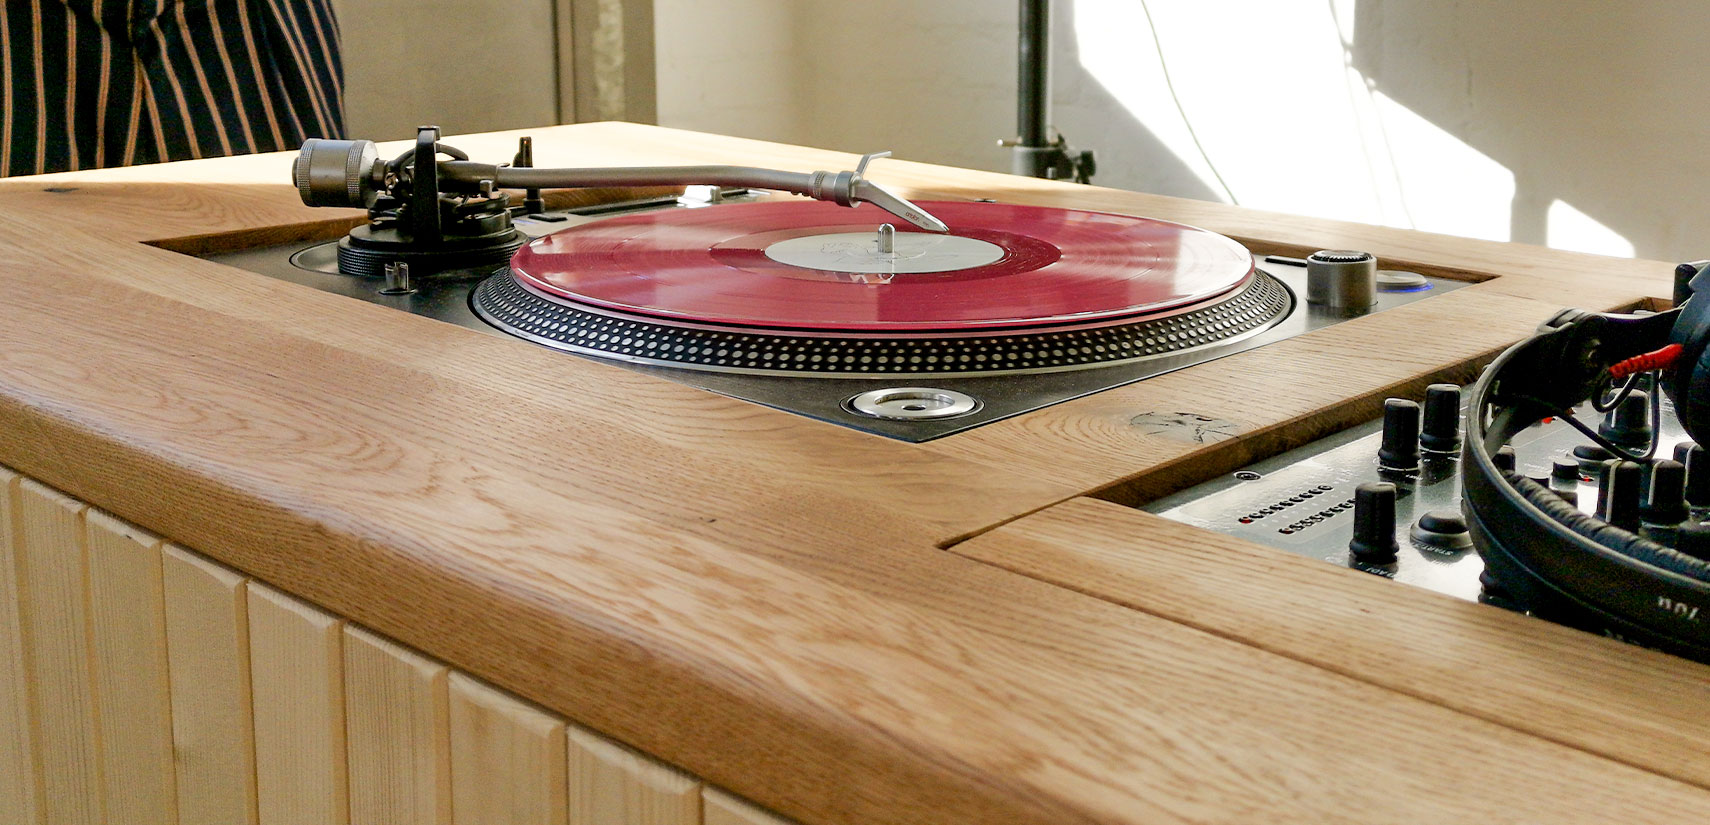 dj pult sounddesk nahaufnahme eingelassener plattenspieler vinyl holz eiche regenholz werkstatt